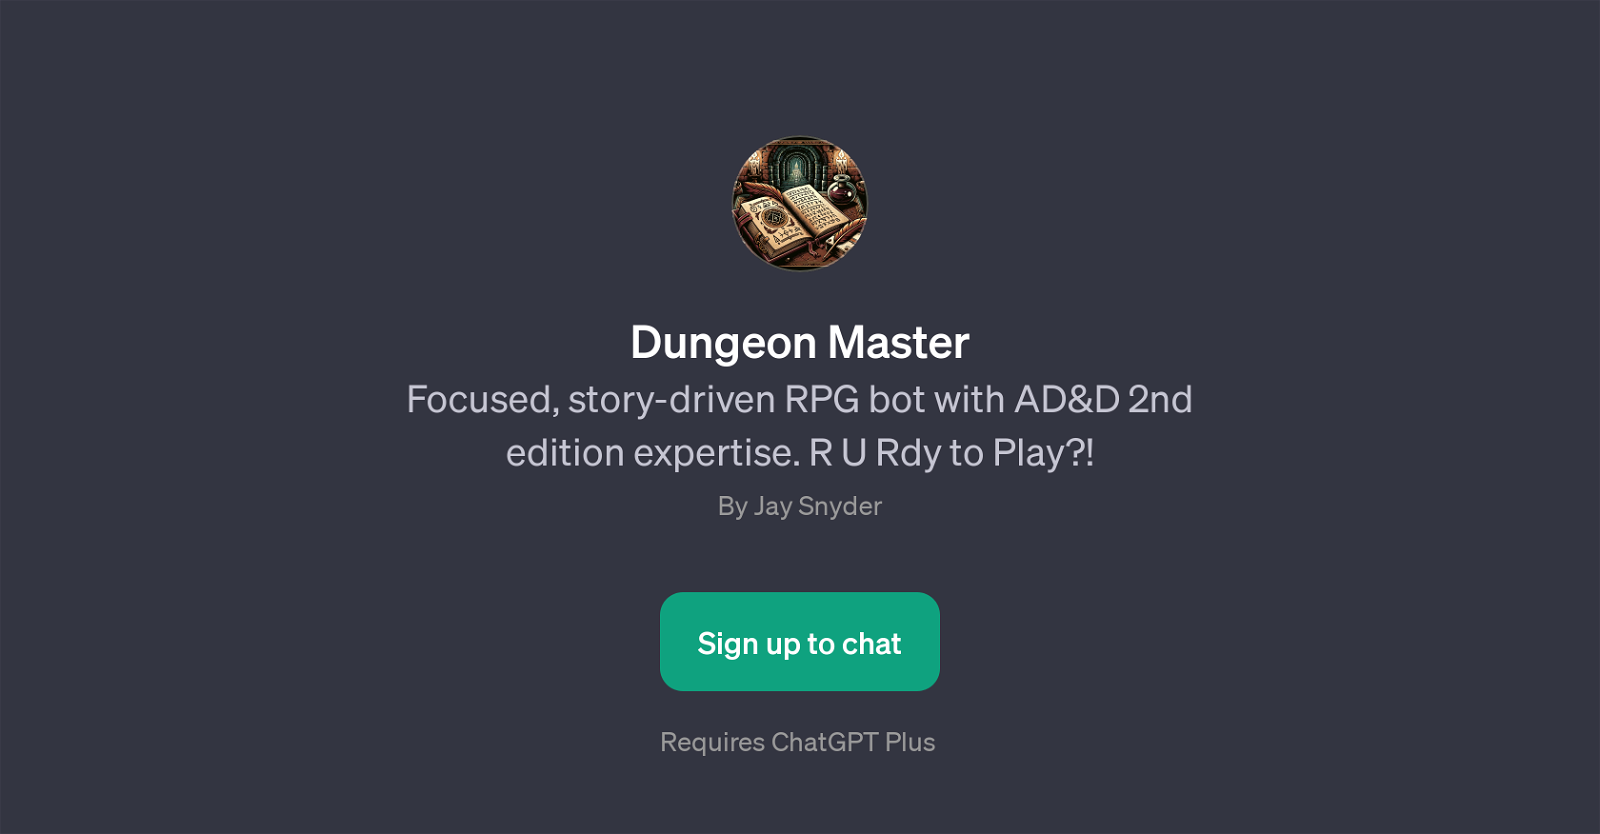 Dungeon Master website